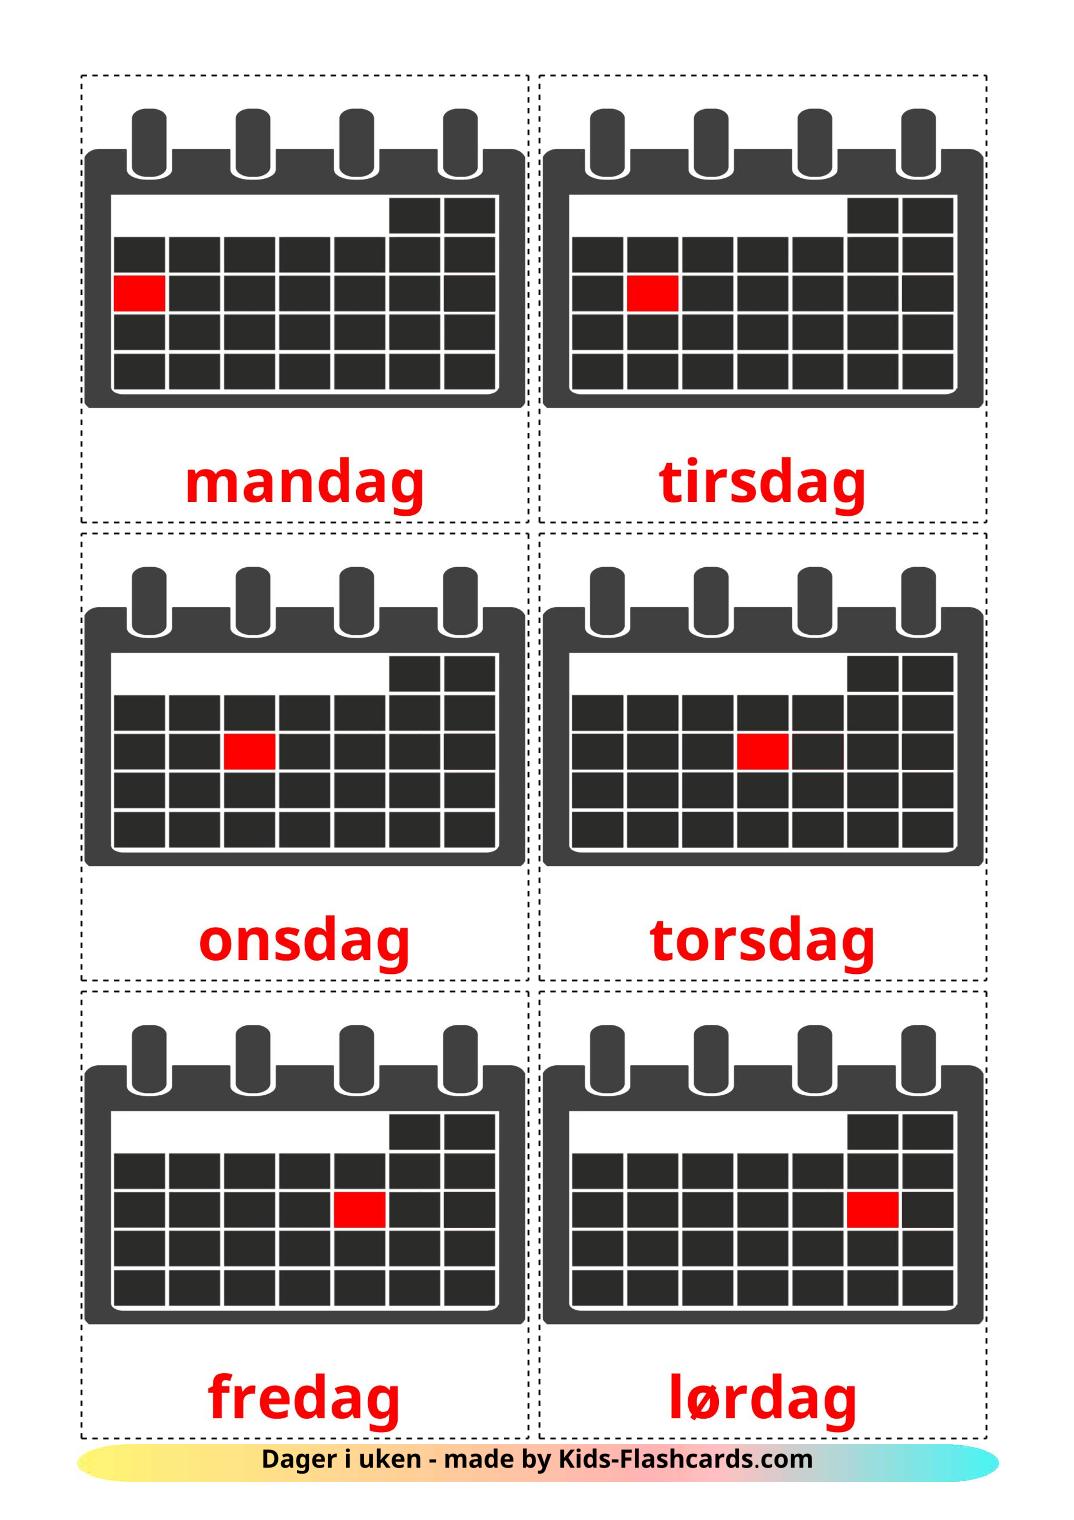 Giorni della settimana - 12 flashcards norvegese stampabili gratuitamente